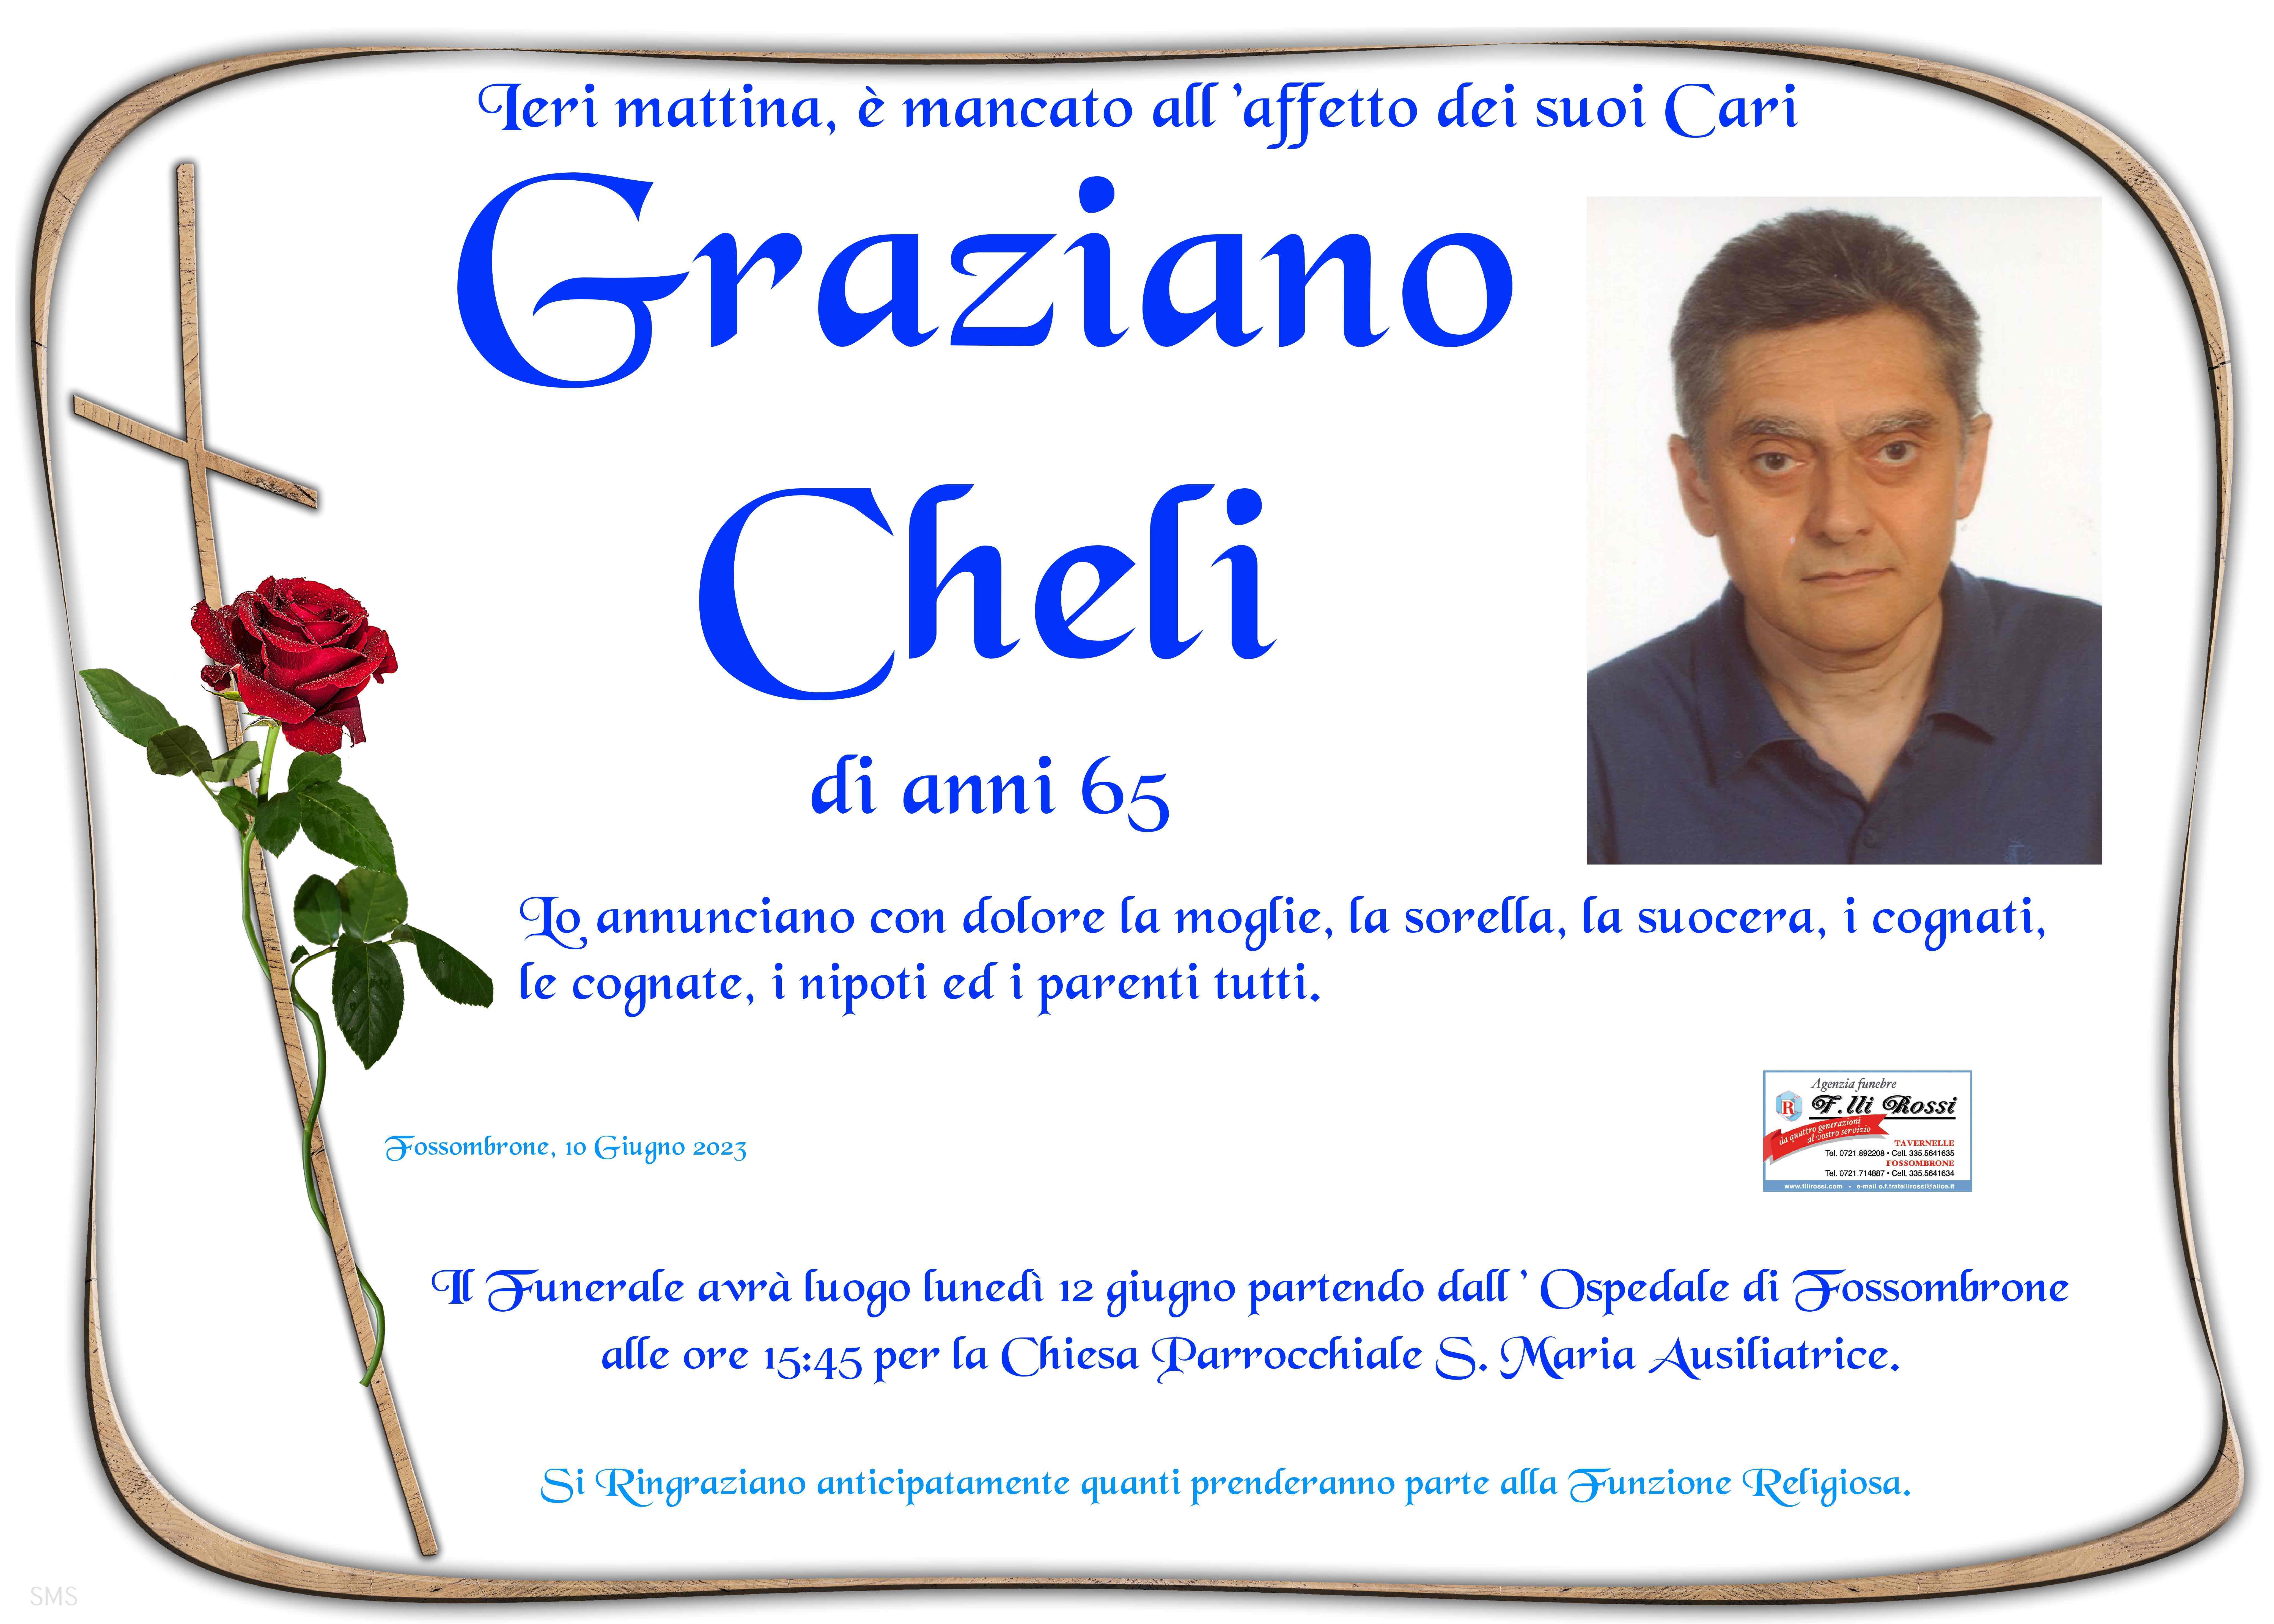 Graziano Cheli